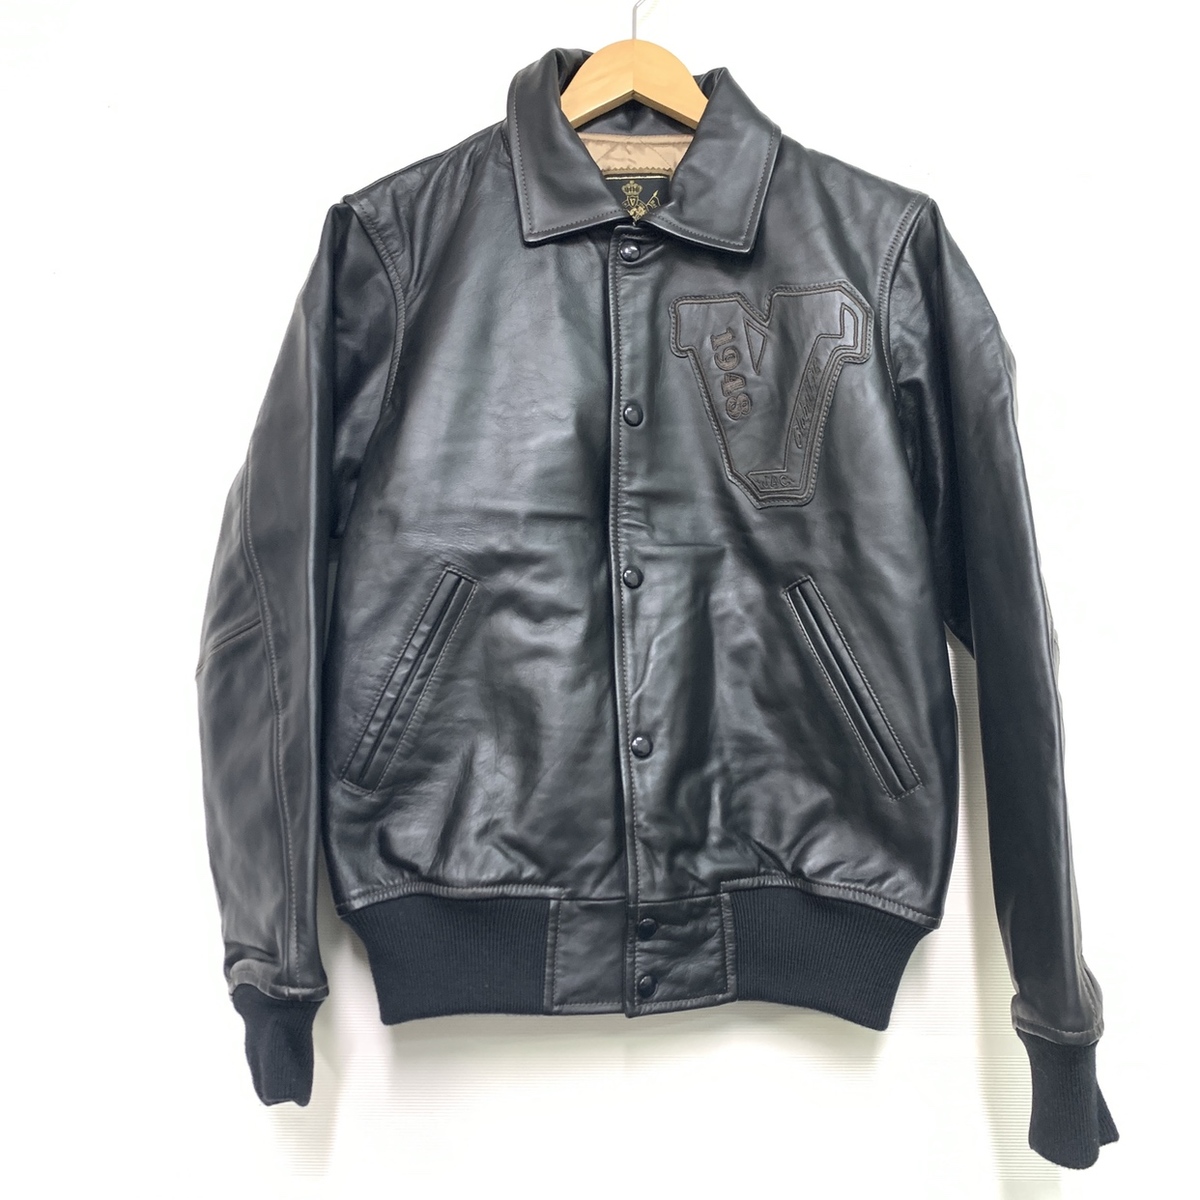 ヴァンヂャケットのJK-19901 黒 ホースハイドのジャケットの買取実績です。